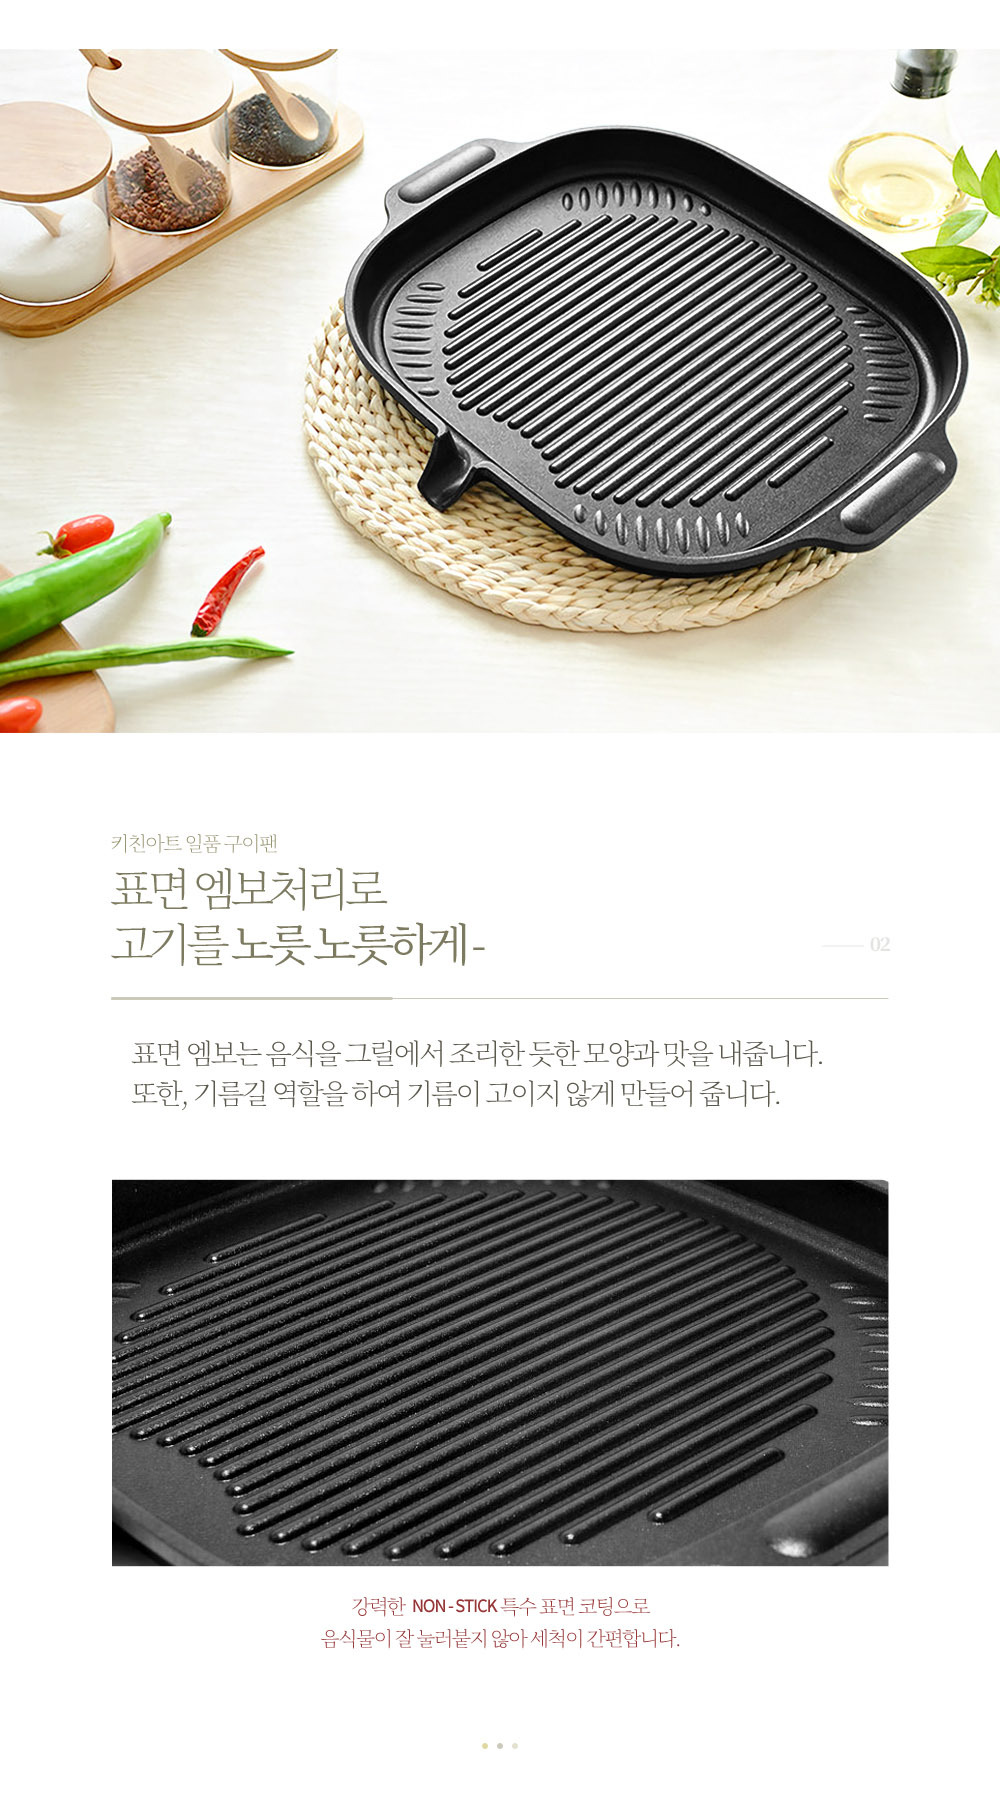 韓國食品-[KitchenArt] Round Induction BBQ Roaster Korea Grill Pan 38.5x30cm